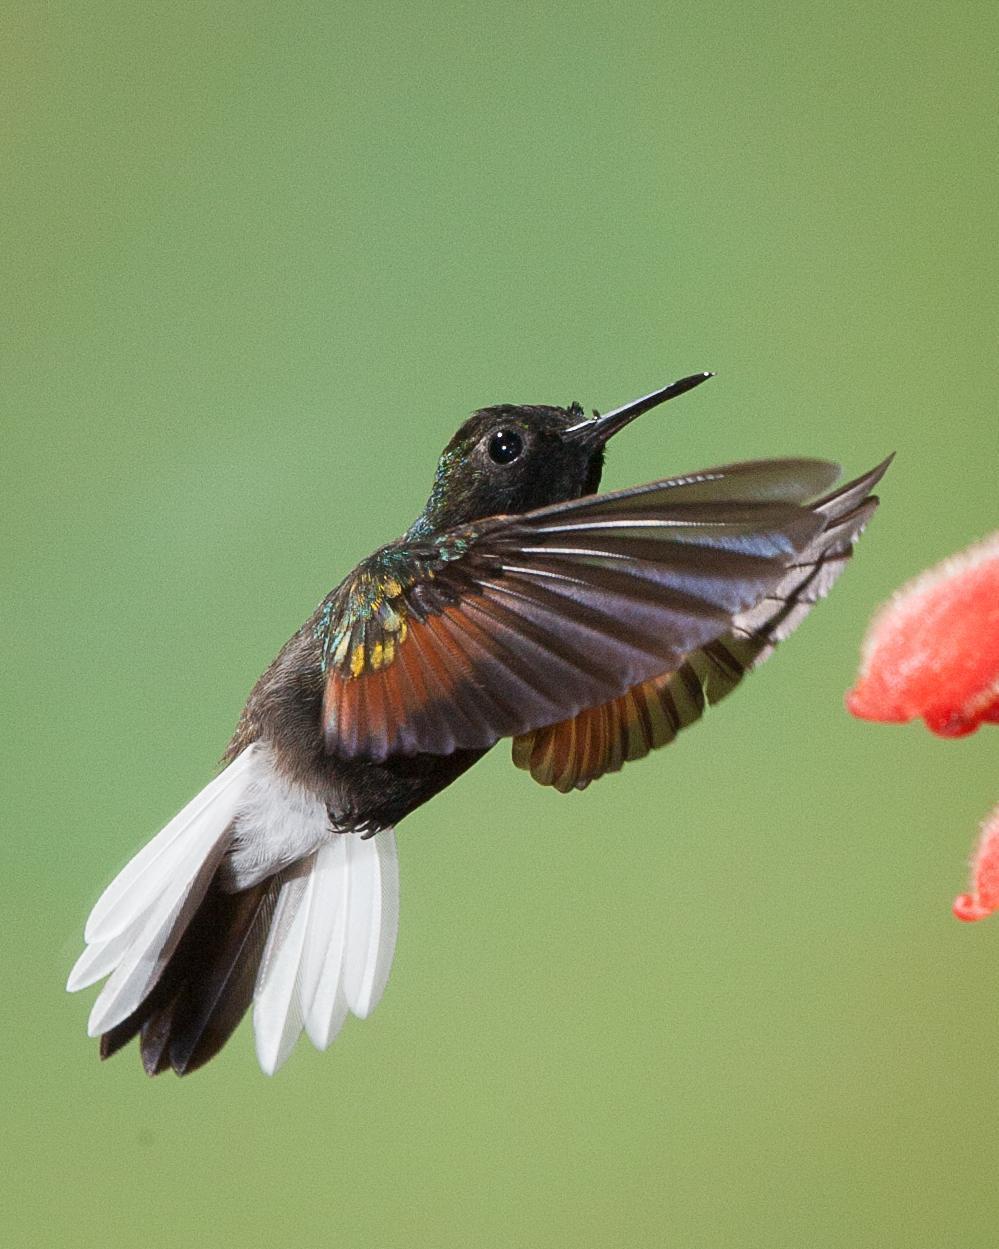 Black-bellied Hummingbird Photo by Robert Lewis